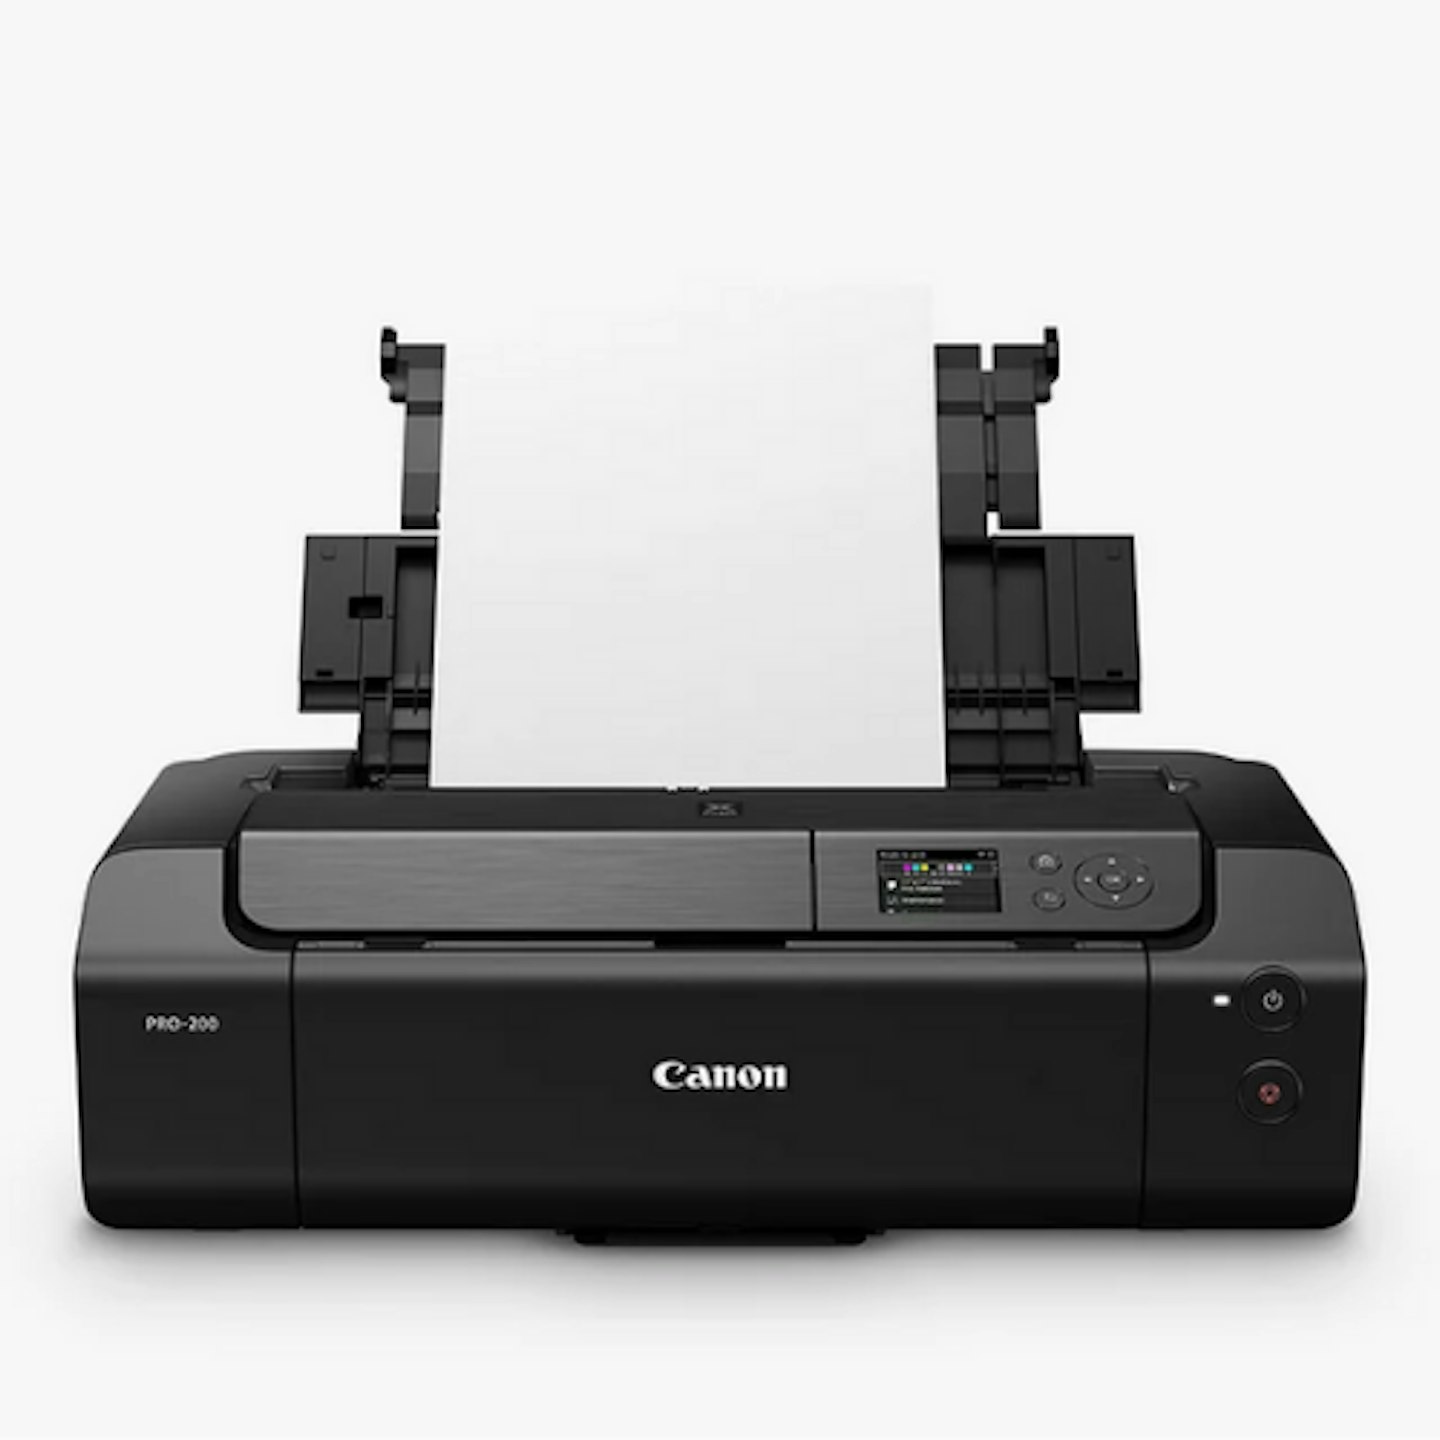 Canon PIXMA PRO-200 A3 Wireless Wi-Fi Photo Printer